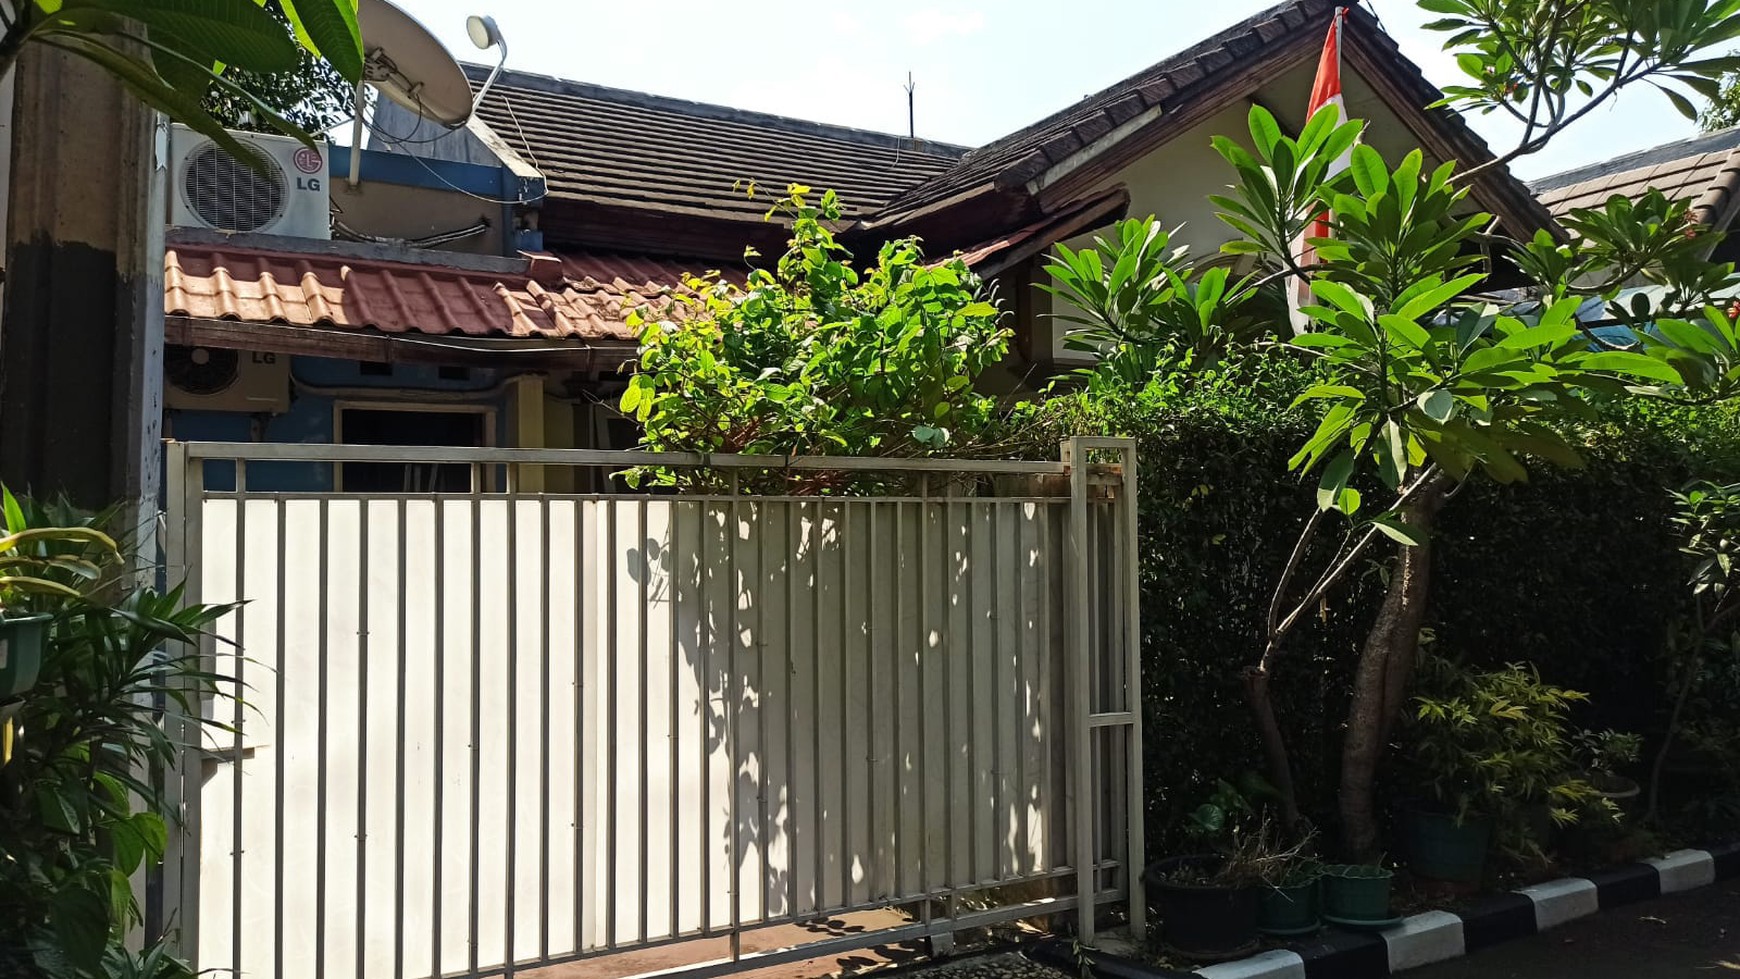 Rumah Rapi Siap Huni di Area Strategis Ciputat, Tangerang Selatan